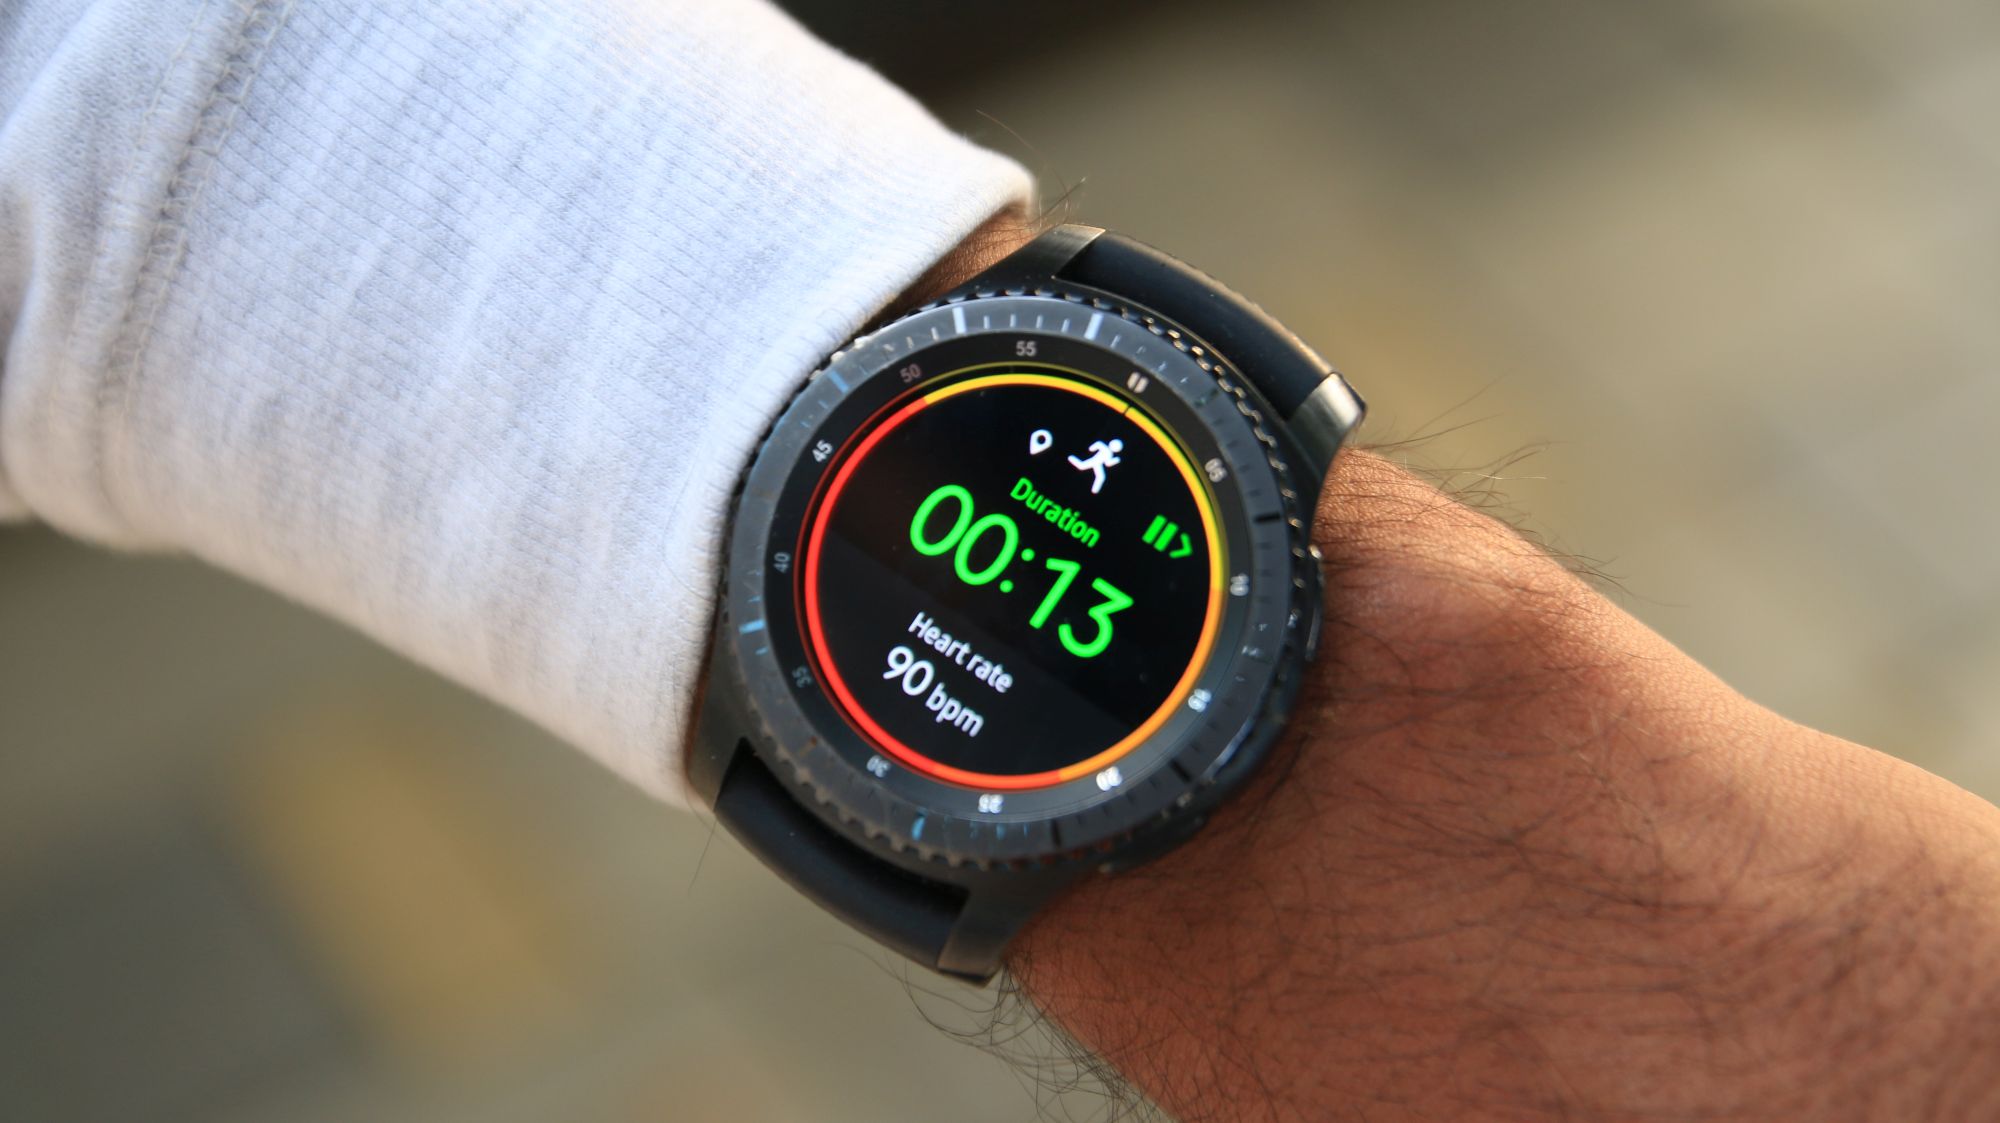 Bombero Melódico construir Samsung Galaxy Gear S3 Frontier Smartwatch Review Sale, 55% OFF |  www.colegiogamarra.com